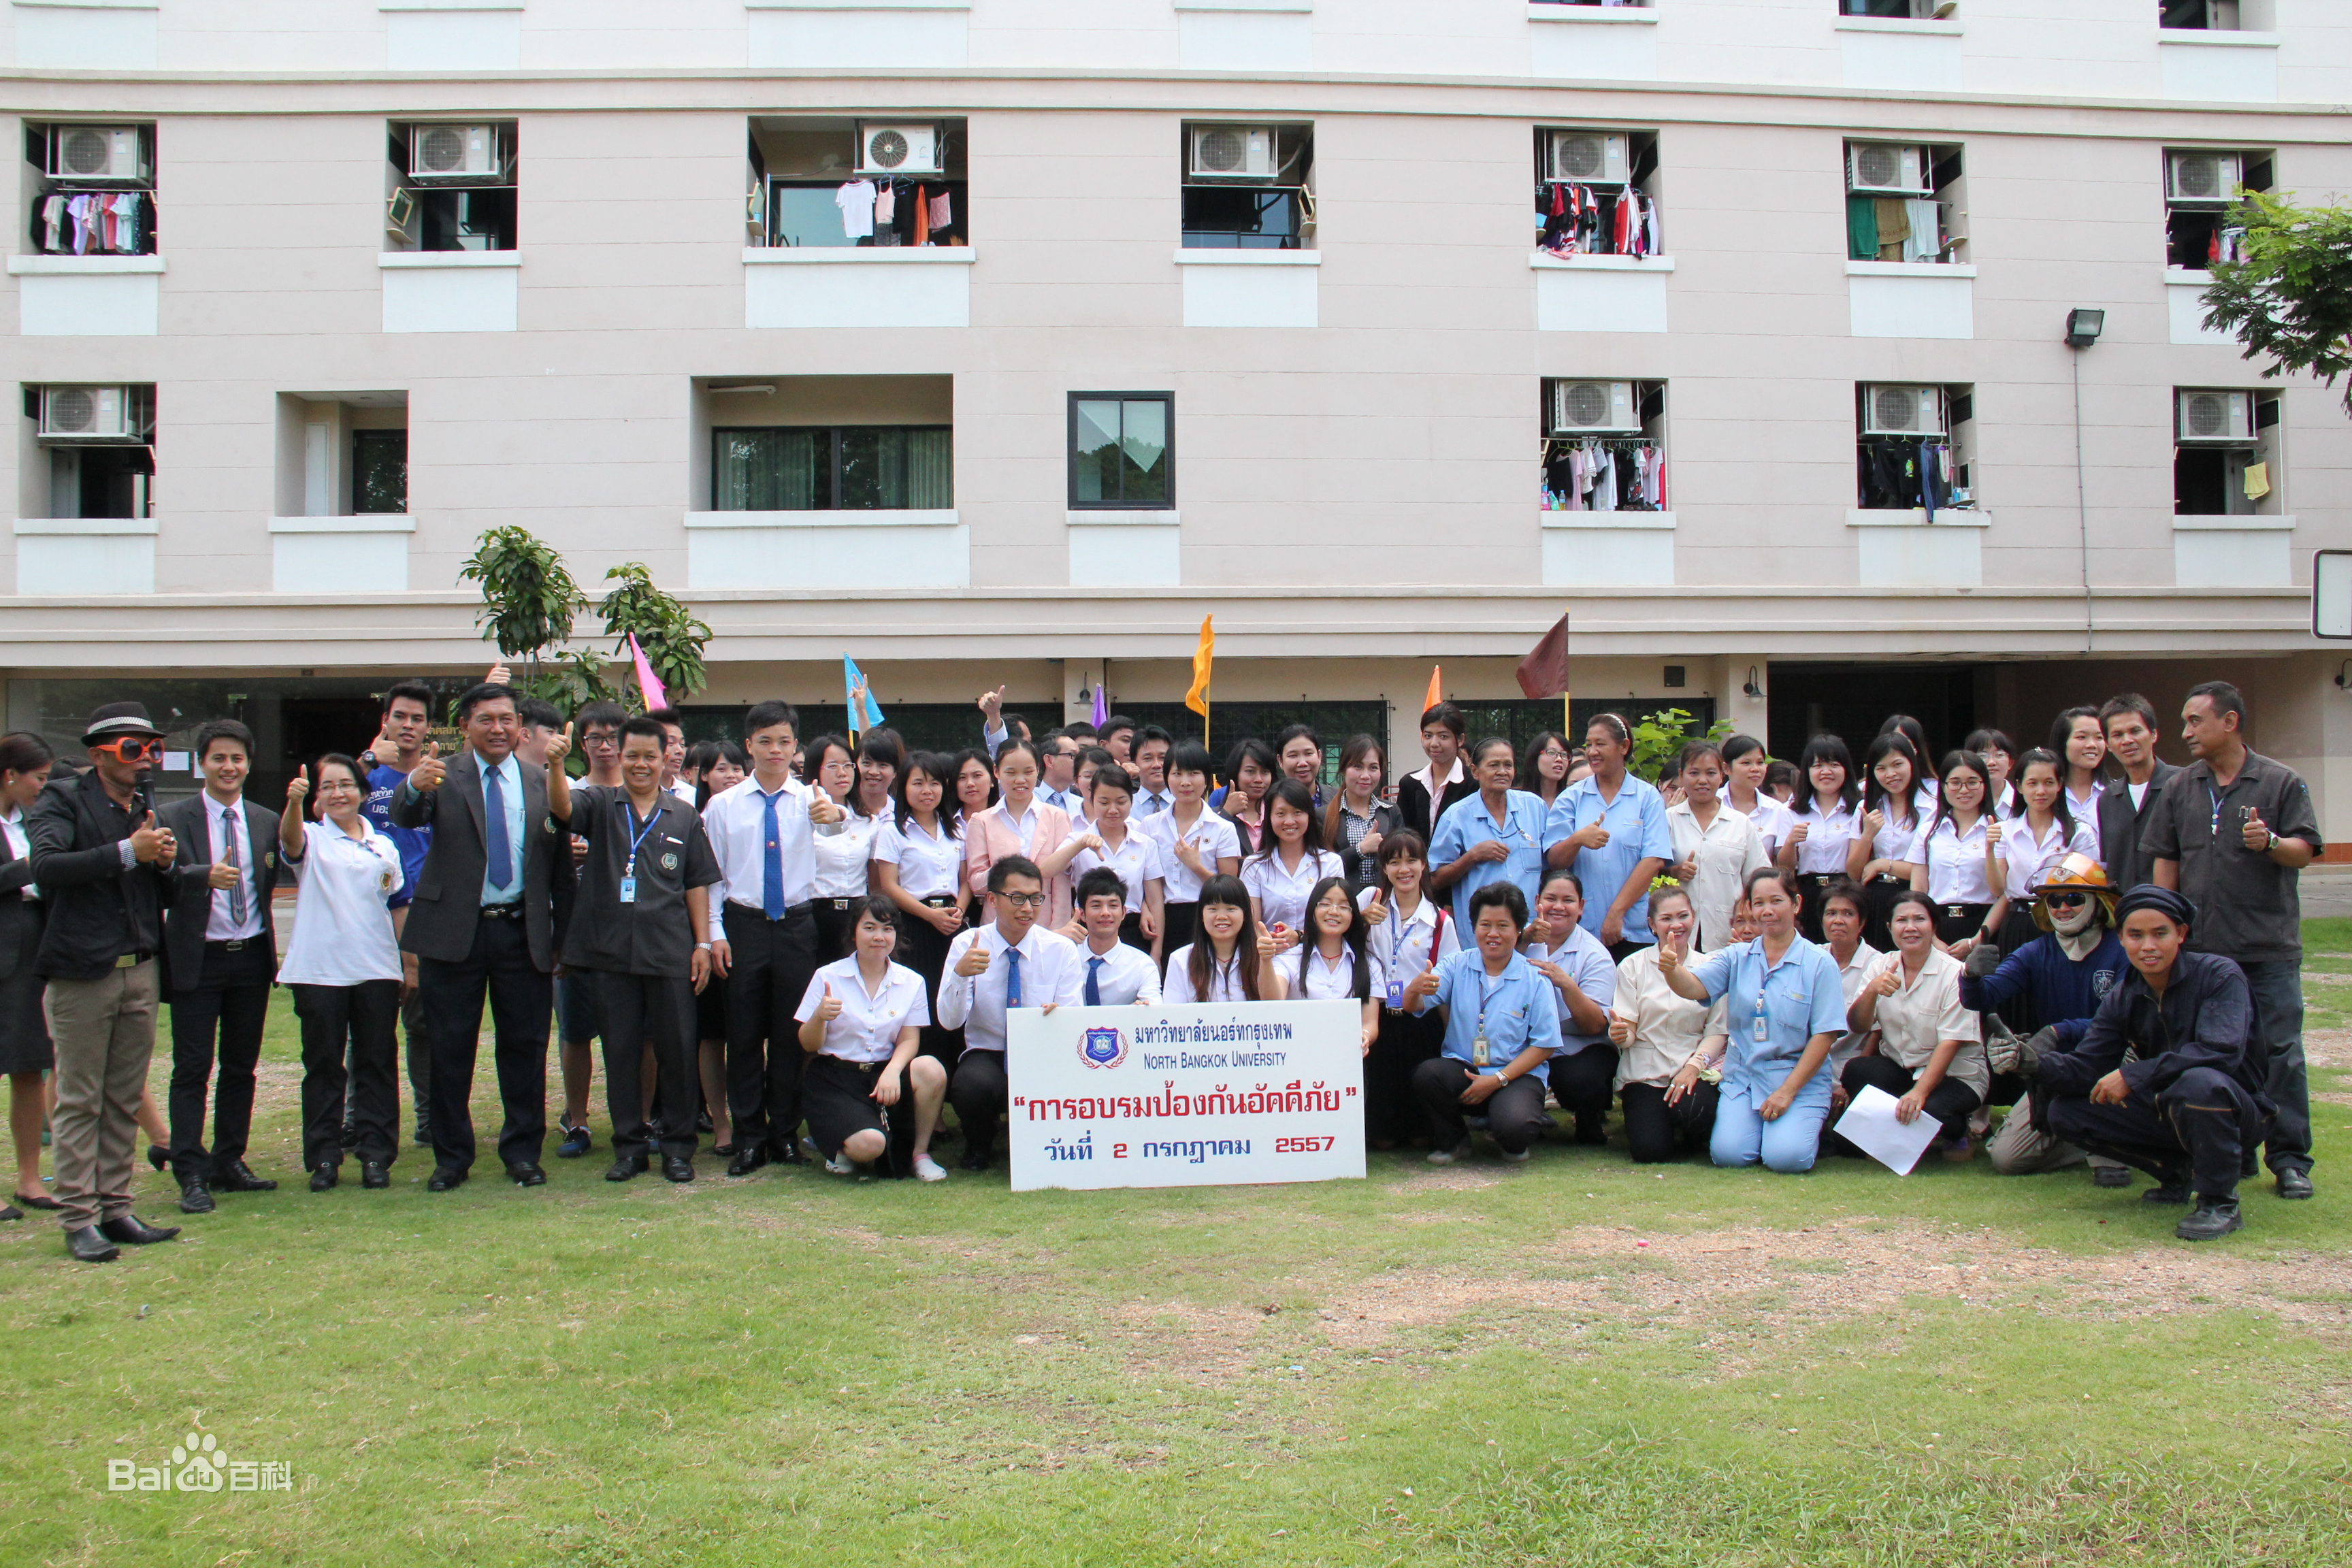 招生简章 | 泰国曼谷北部大学中文MBA项目 